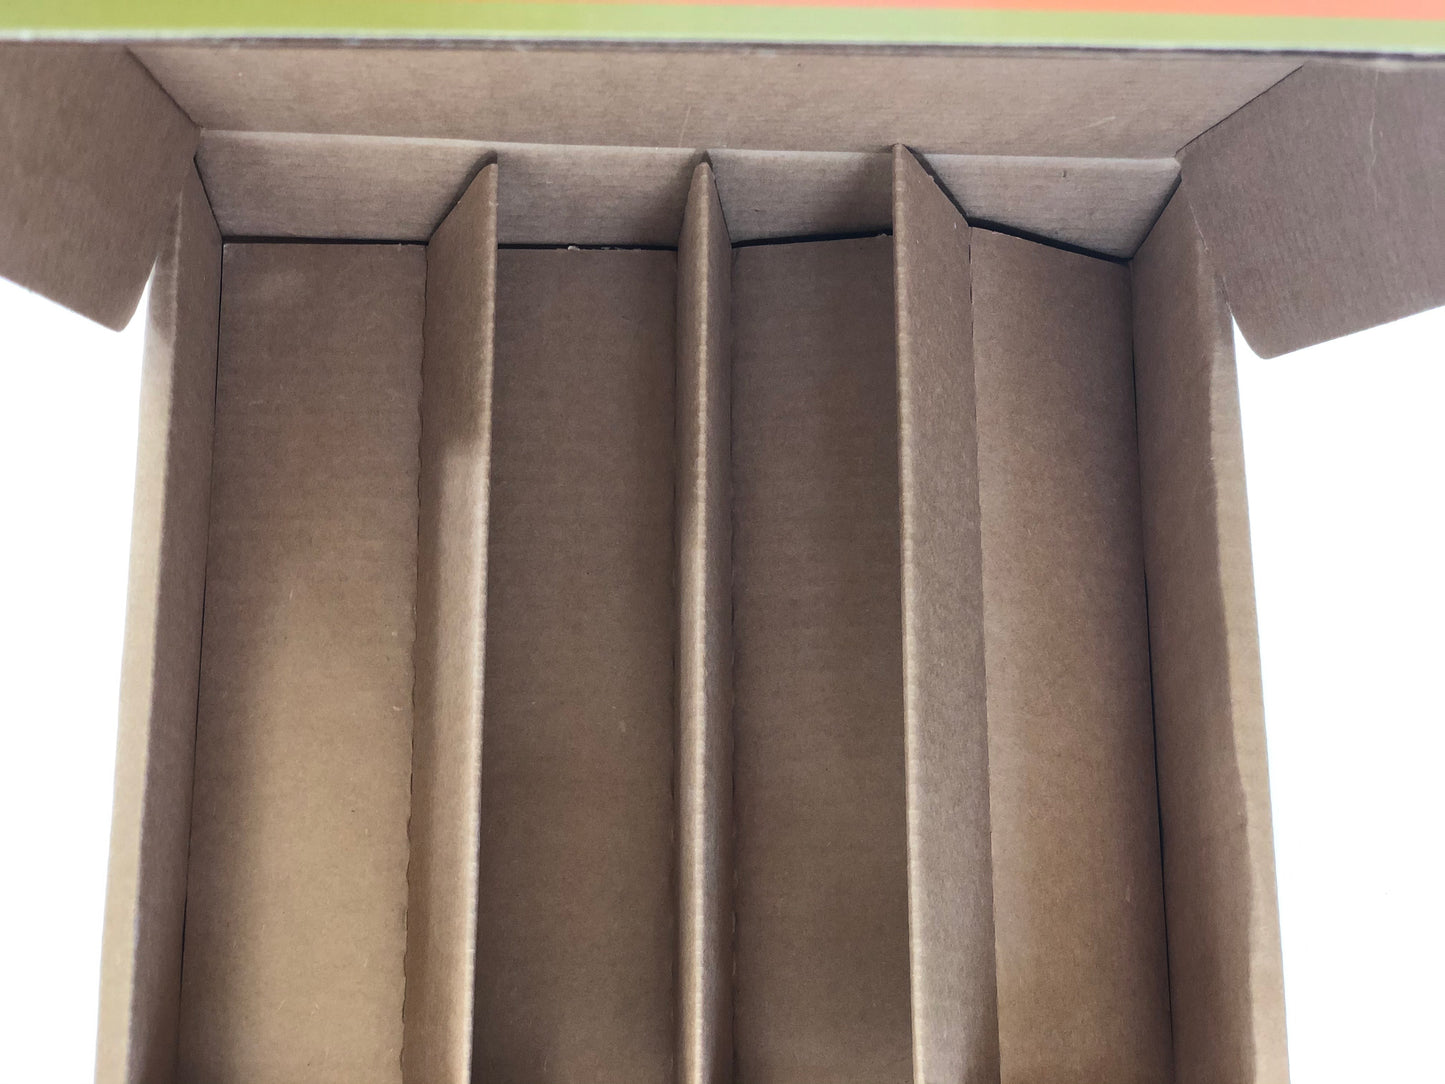 Packaging - 4-375ml Bottles Gift Box